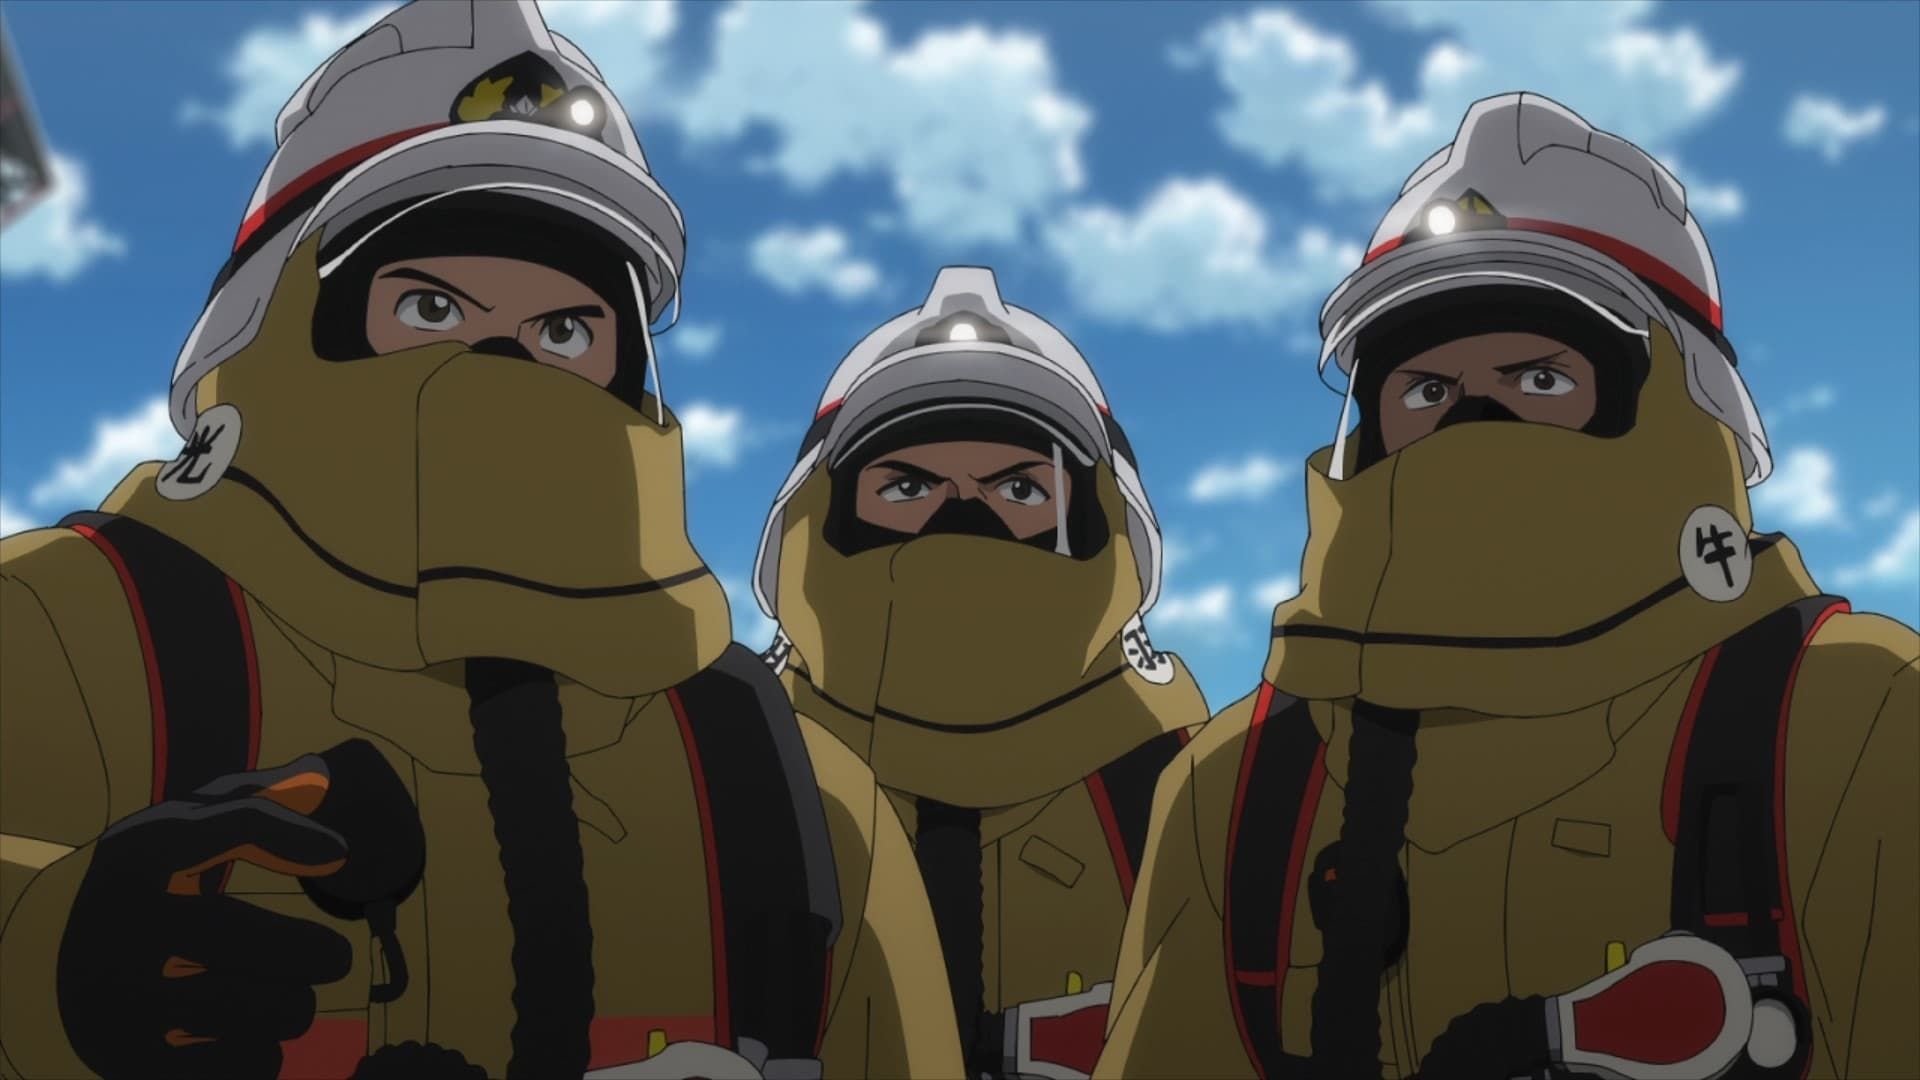 Watch Firefighter Daigo: Rescuer in Orange · Season 1 Full Episodes Free  Online - Plex